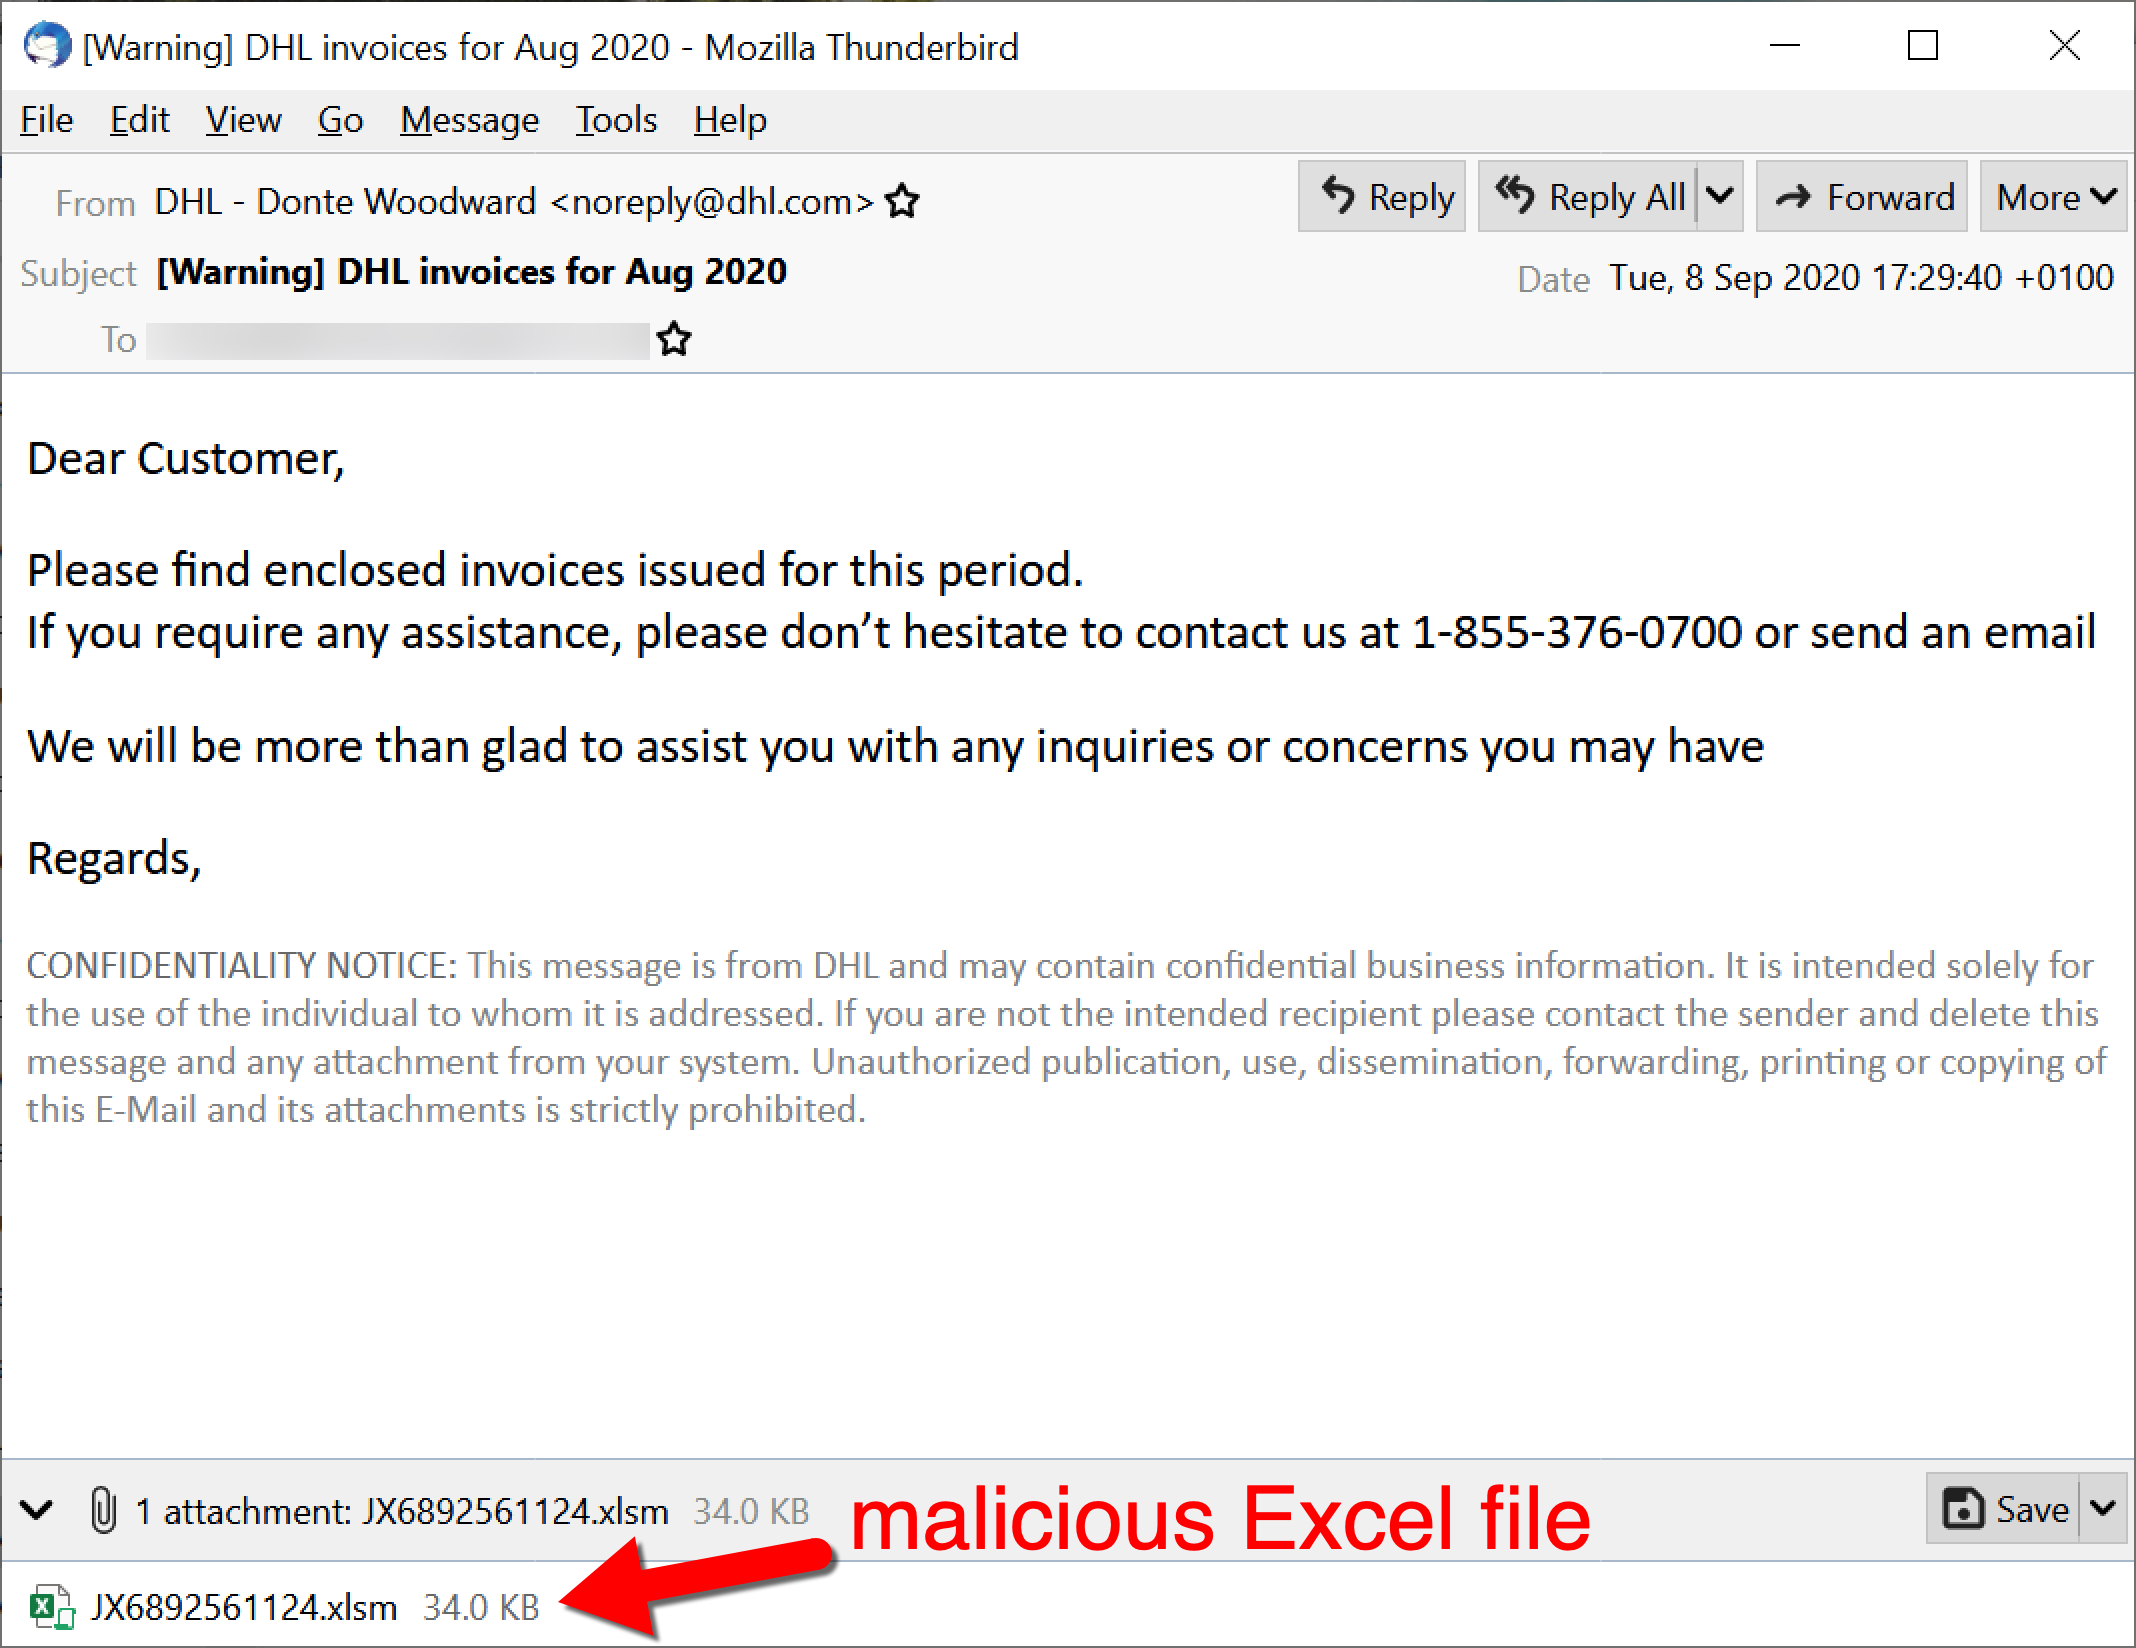 Dridexをプッシュする悪意のあるExcelファイルが添付された「DHL Invoices for Aug 2020（2020年8月のDHL請求書）」という件名の電子メール